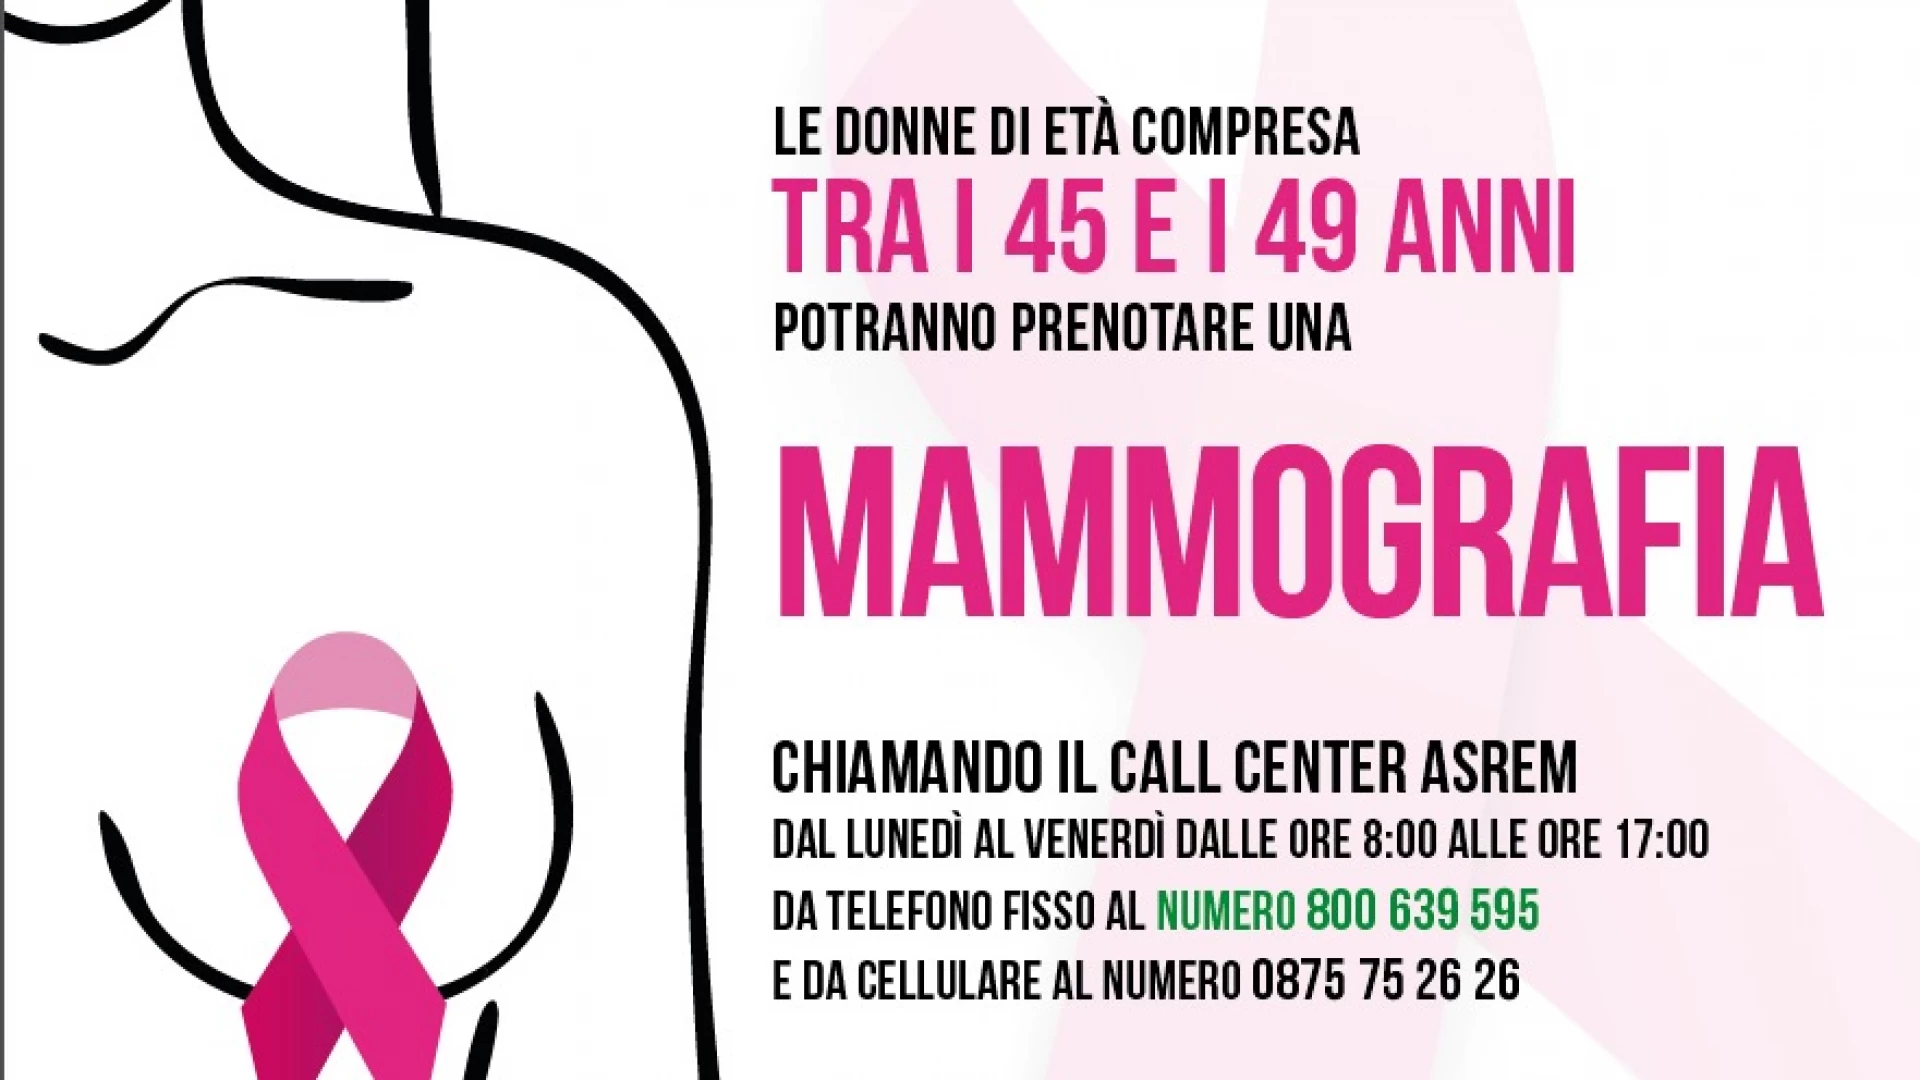 Campagna Nastro Rosa 2021, al via lo screening mammografico per donne tra 45 e 49 anni.